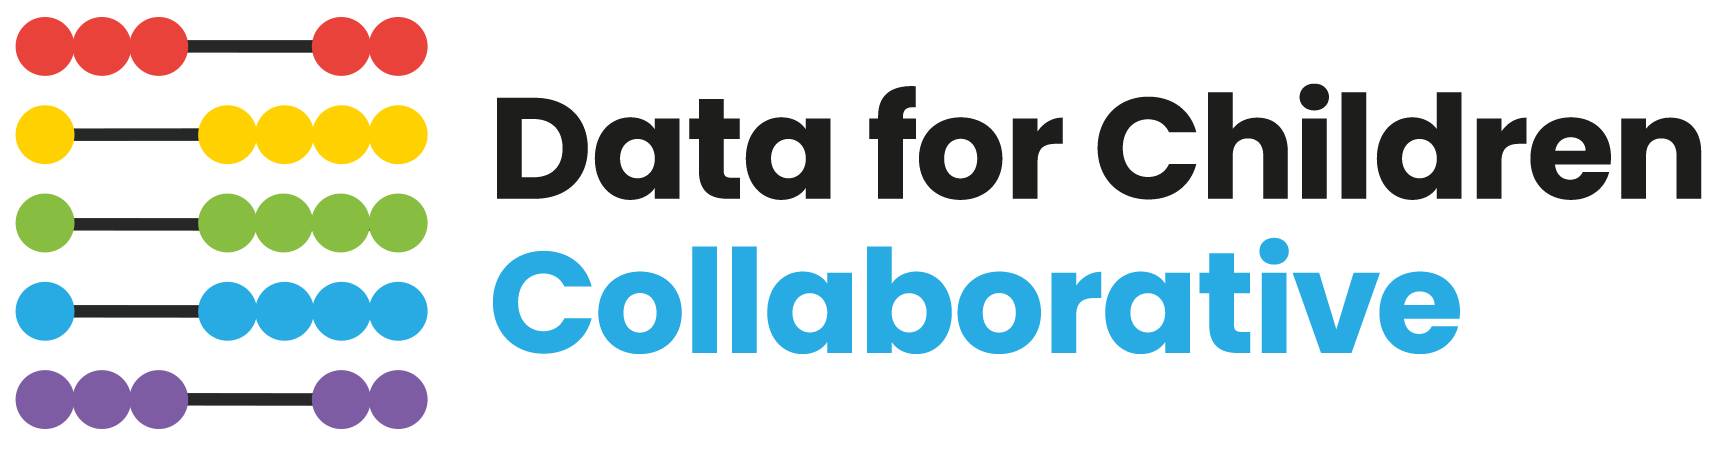 Data for Children Collaborative